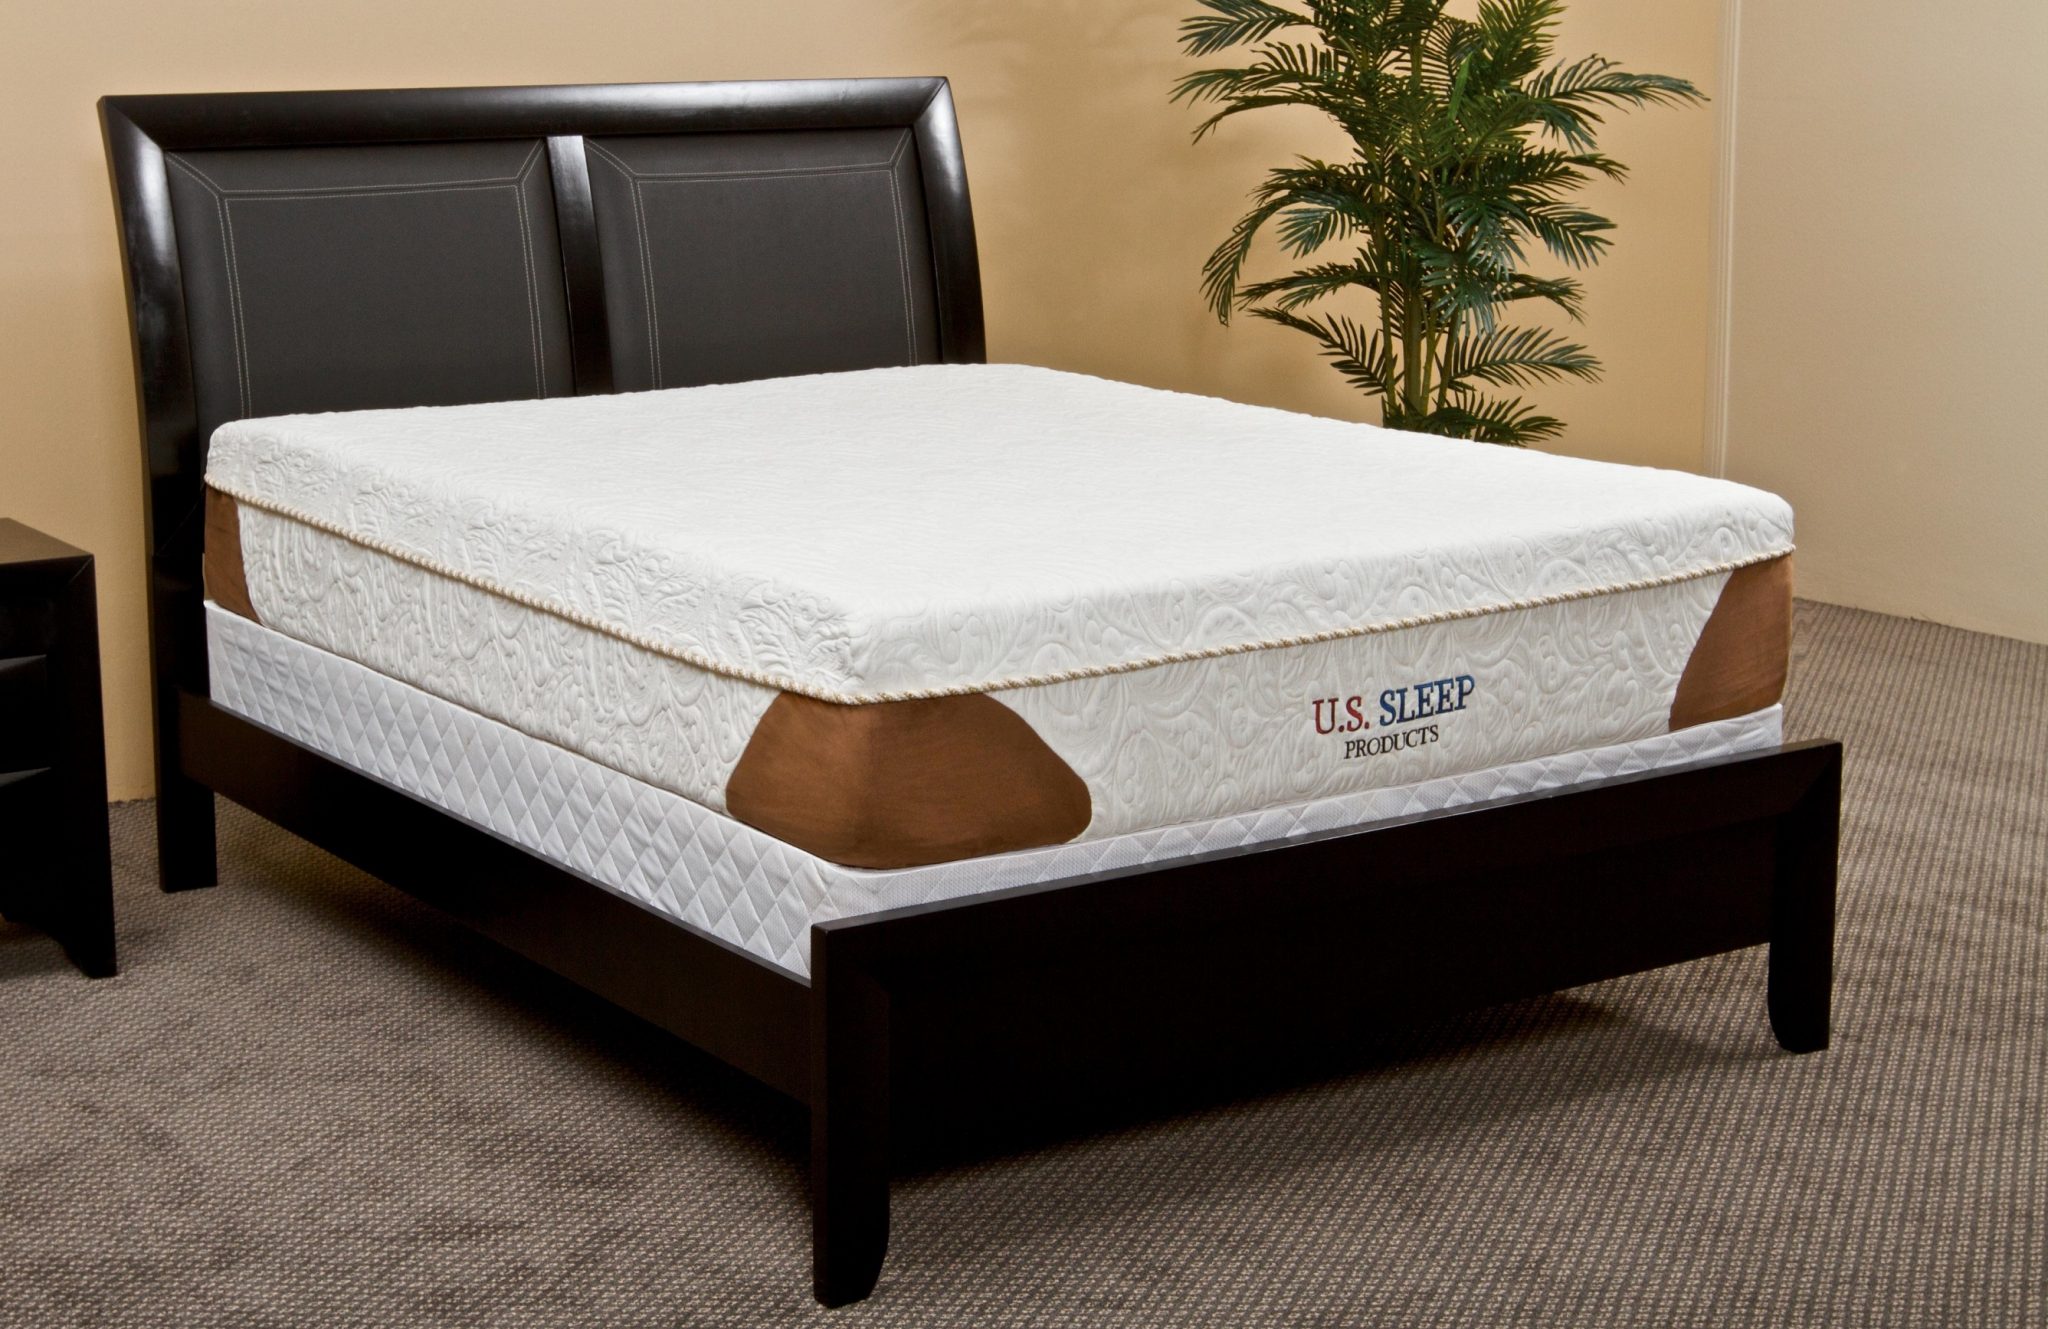 furniture fair mattress cincinnati